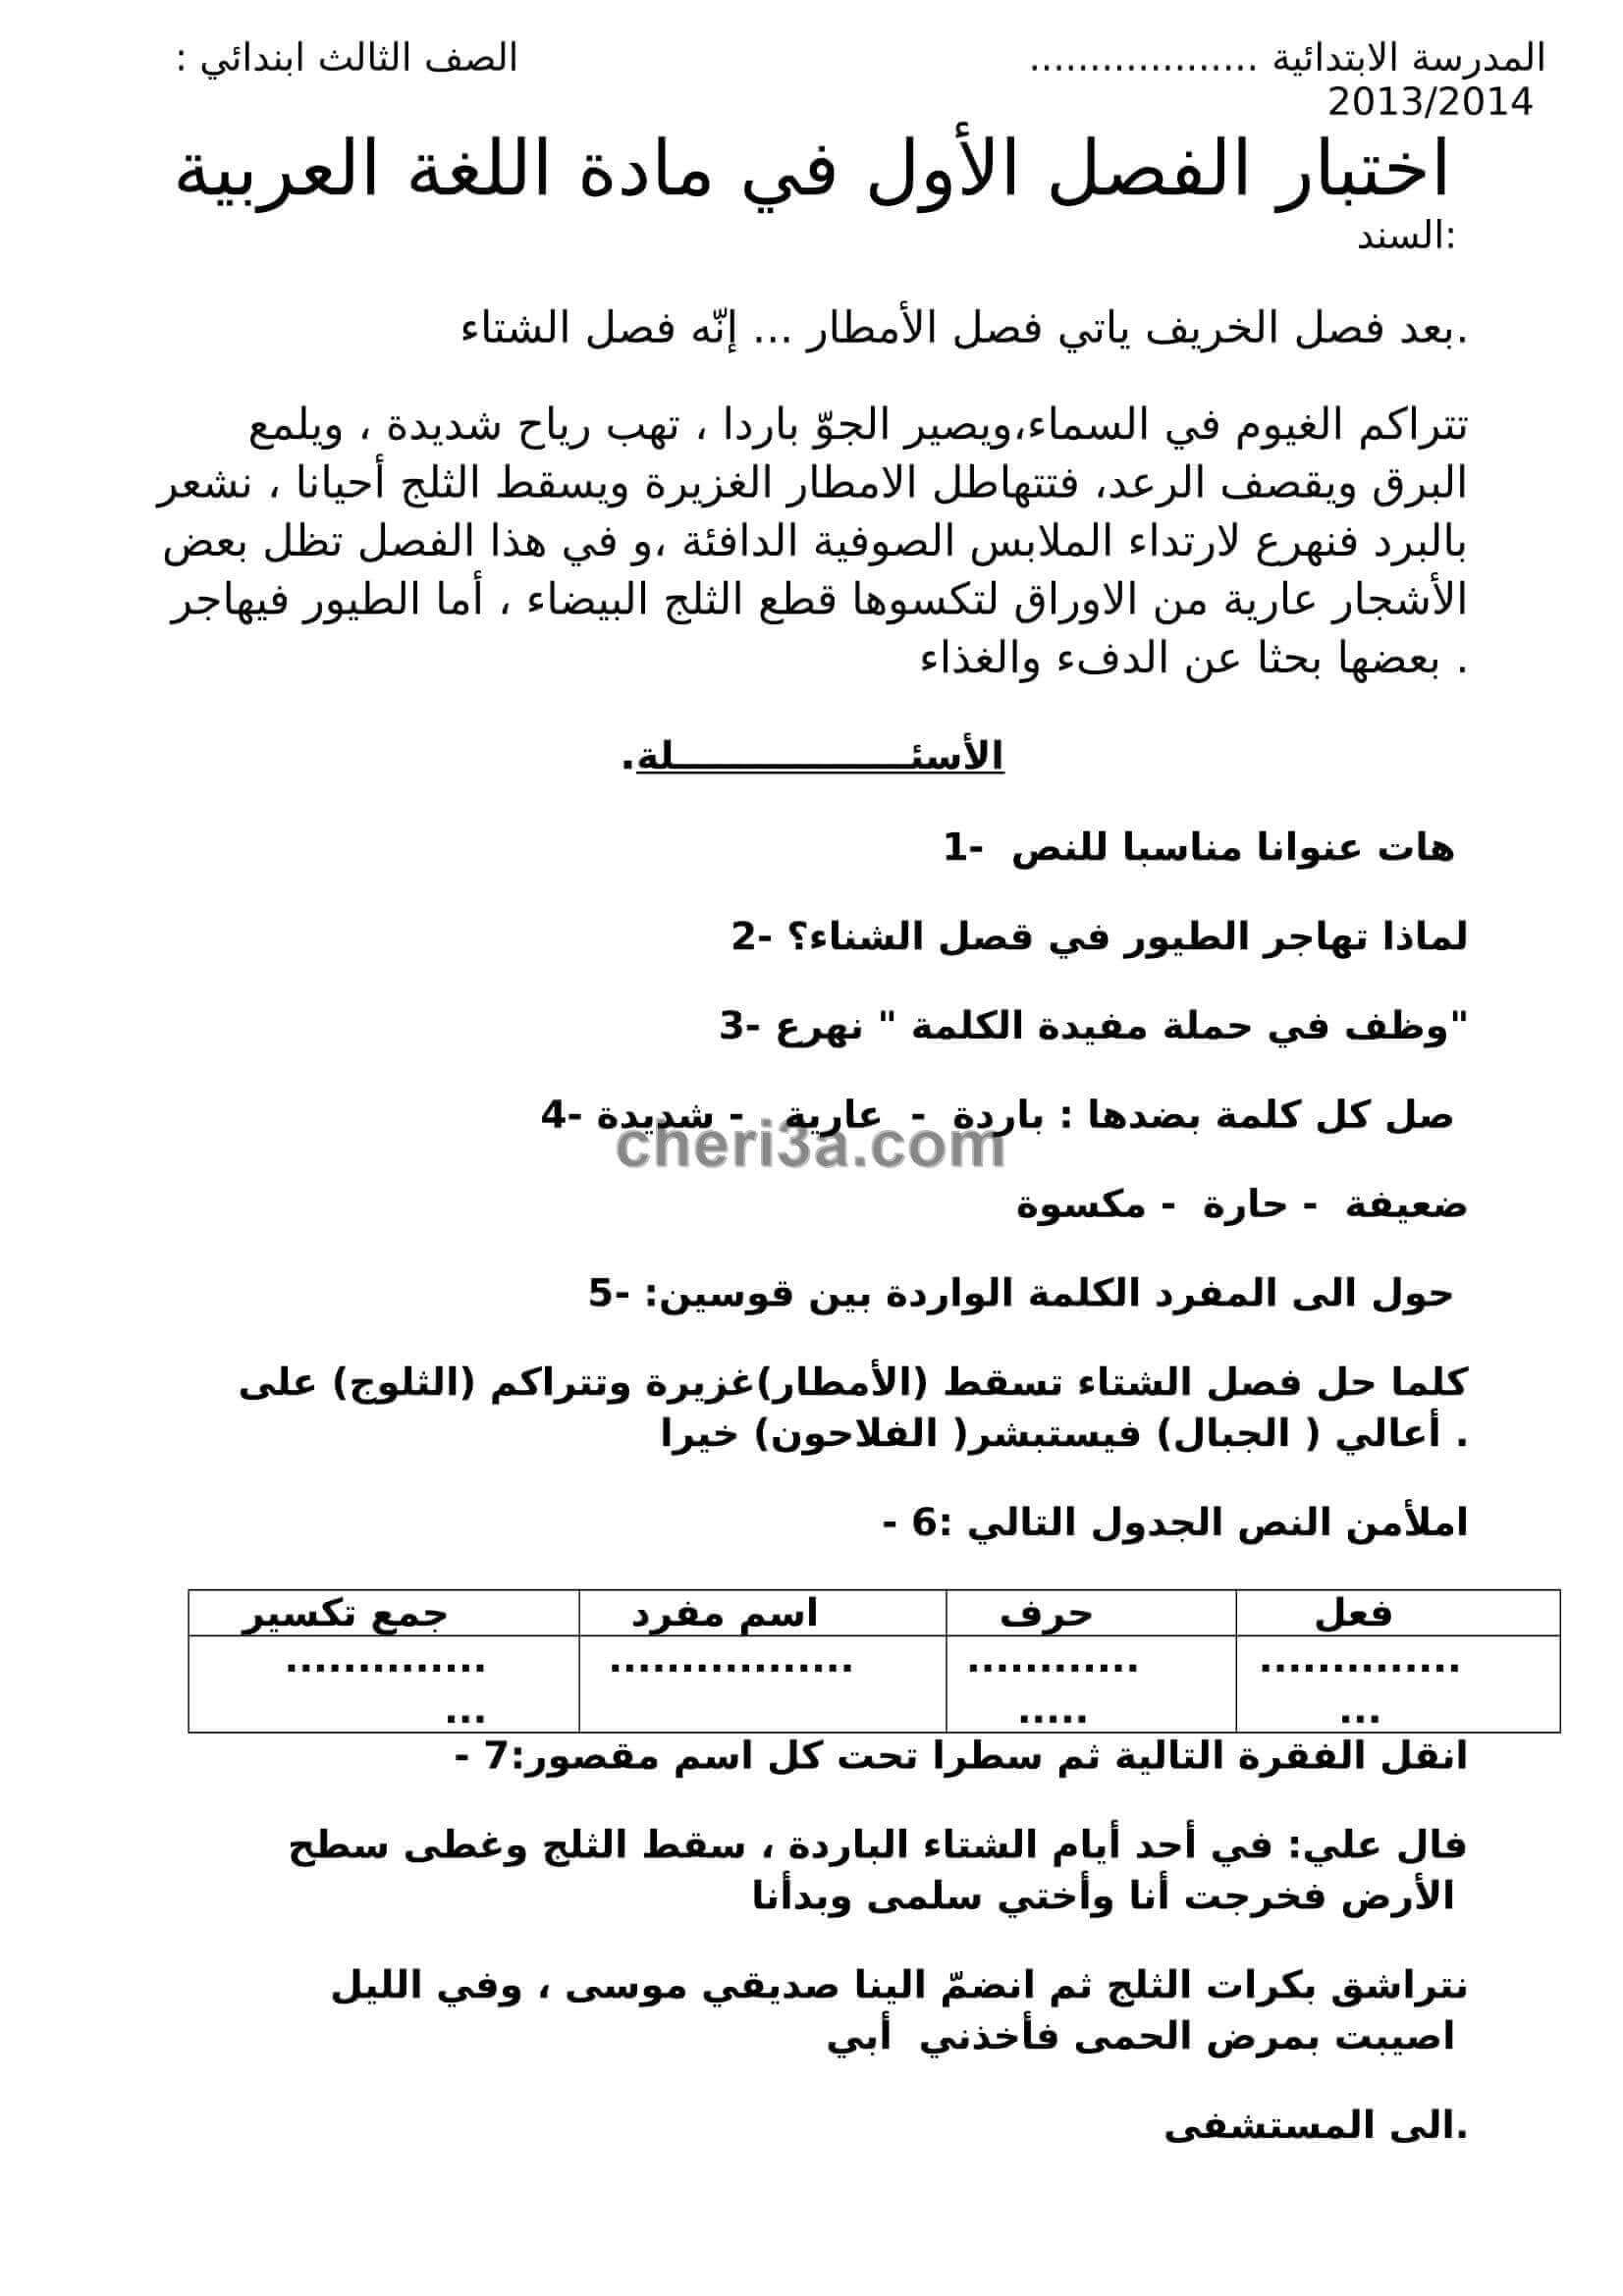 اختبار الفصل الاول للسنة الثالثة ابتدائي في مادة اللغة العربية النموذج 5